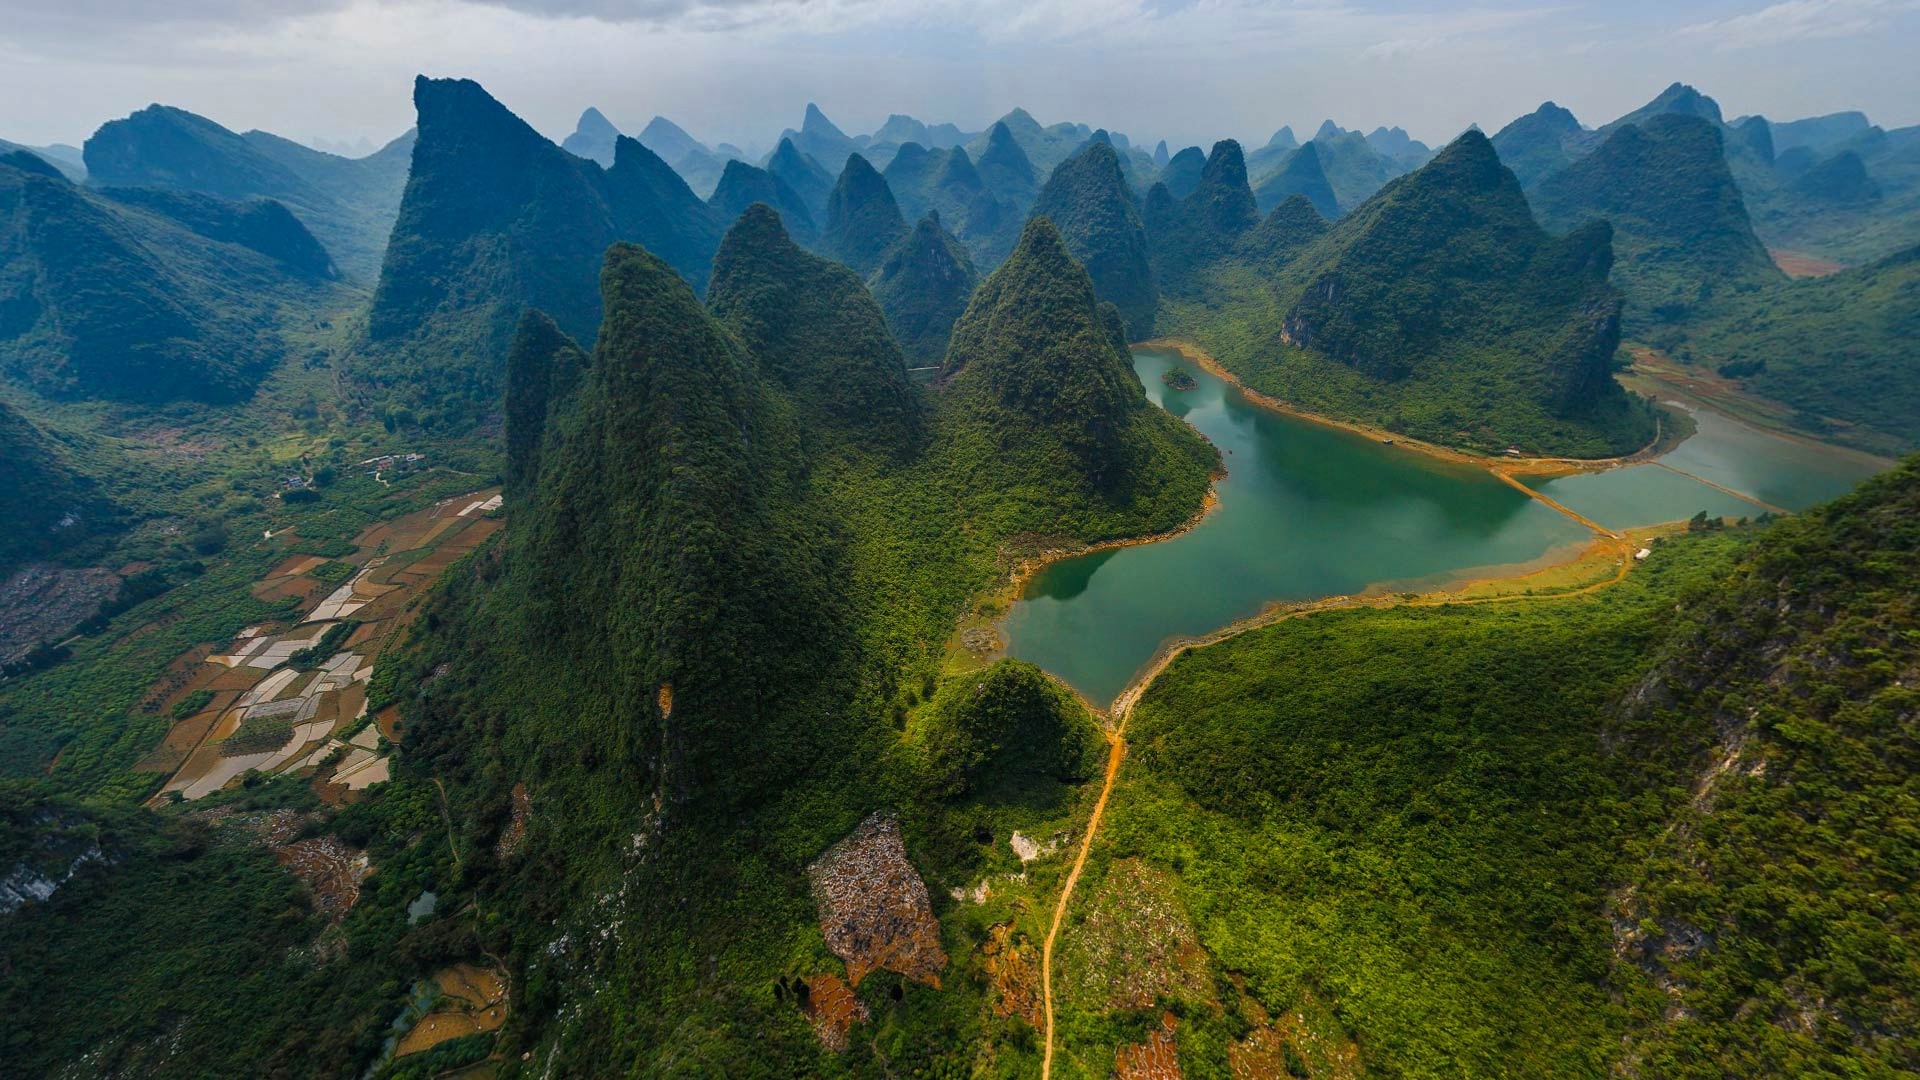 自然景观 风景名胜 桂林 漓江 山水风景桌面壁纸壁纸